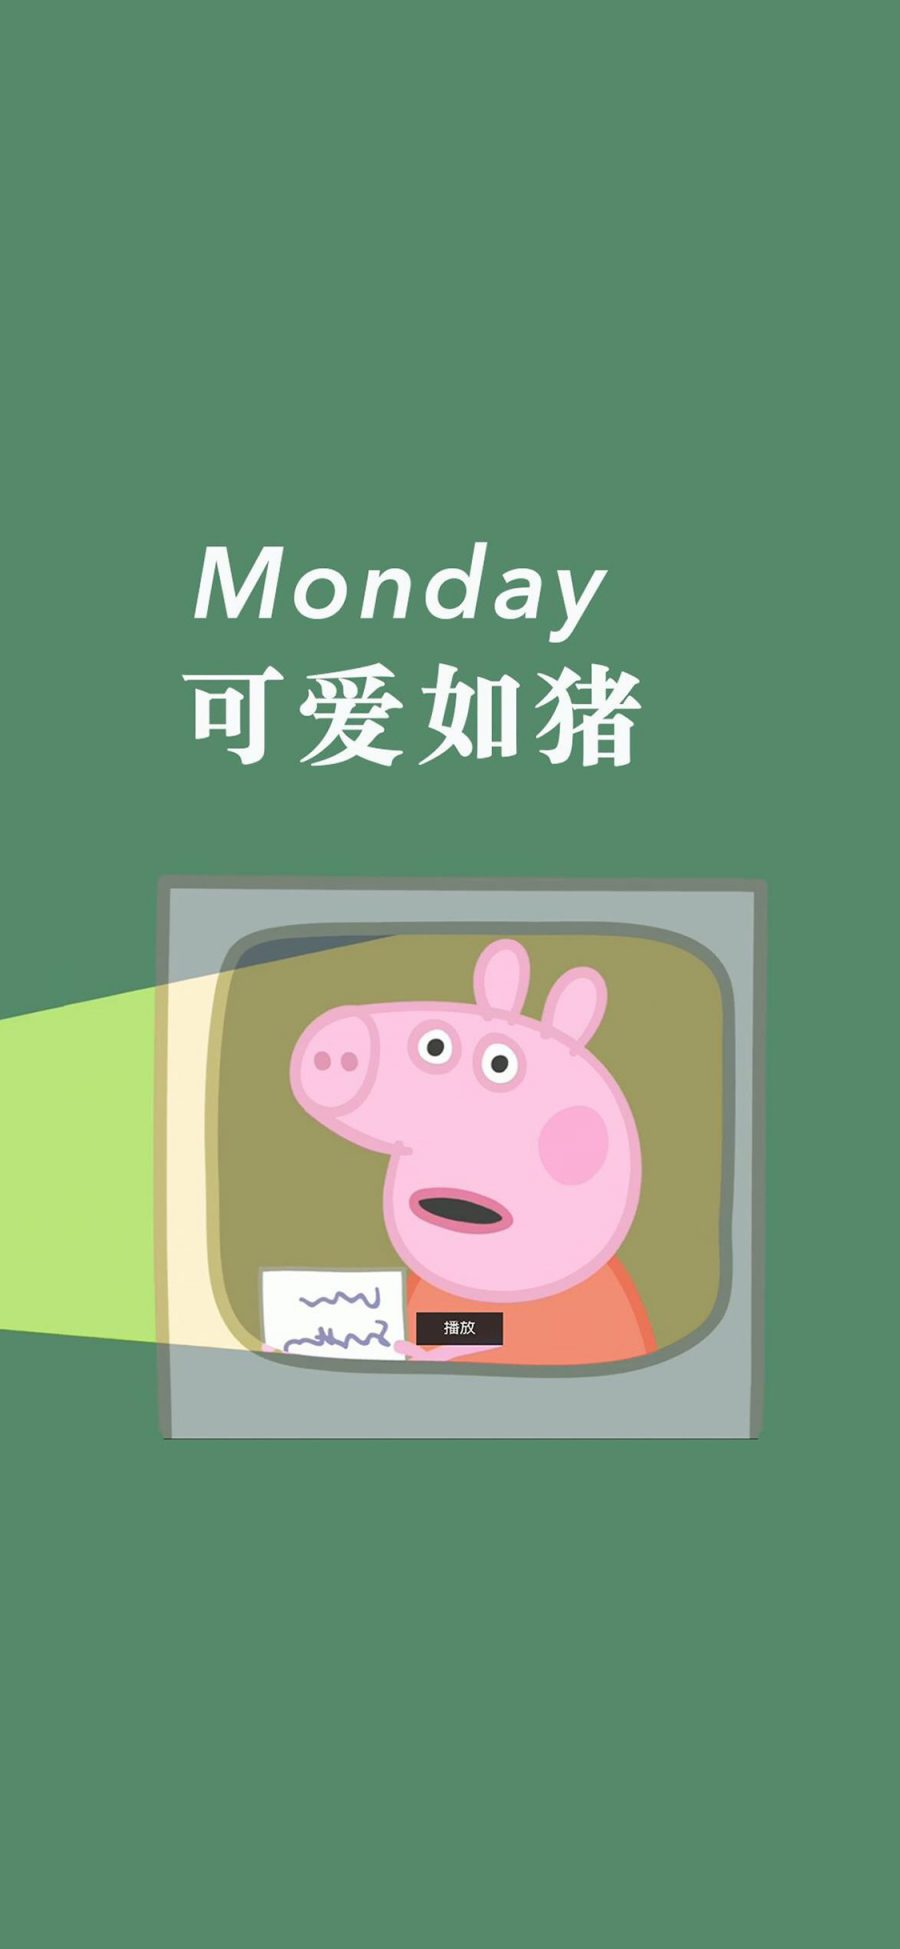 [2436×1125]可爱如猪 小猪佩奇 周一 Monday 绿色 苹果手机动漫壁纸图片